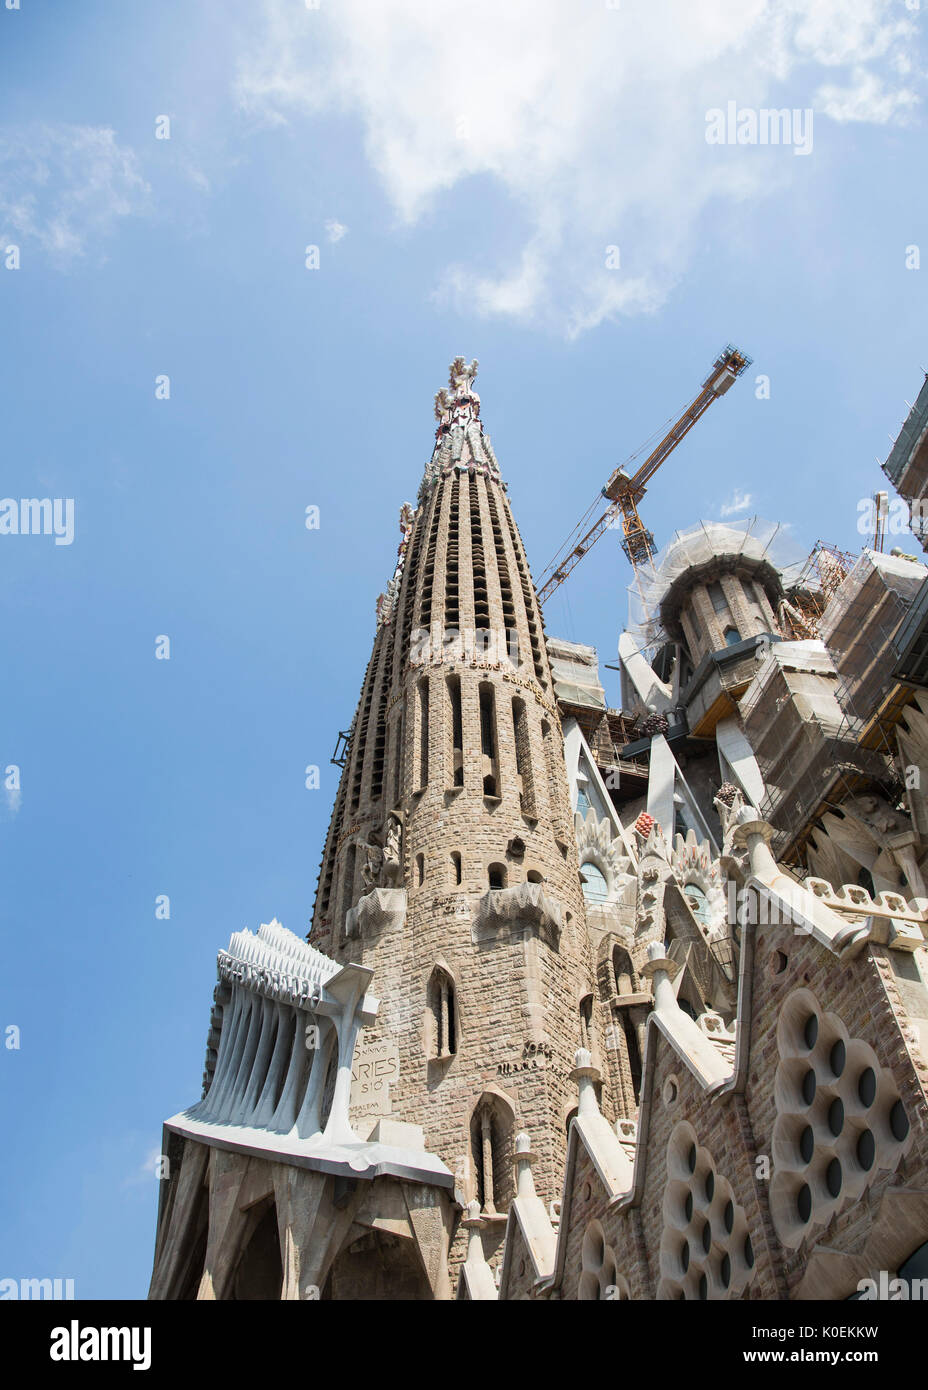 Une vue extérieure de la Basilique de la Sagrada Familia, qui est encore en construction, à Barcelone, Espagne Banque D'Images